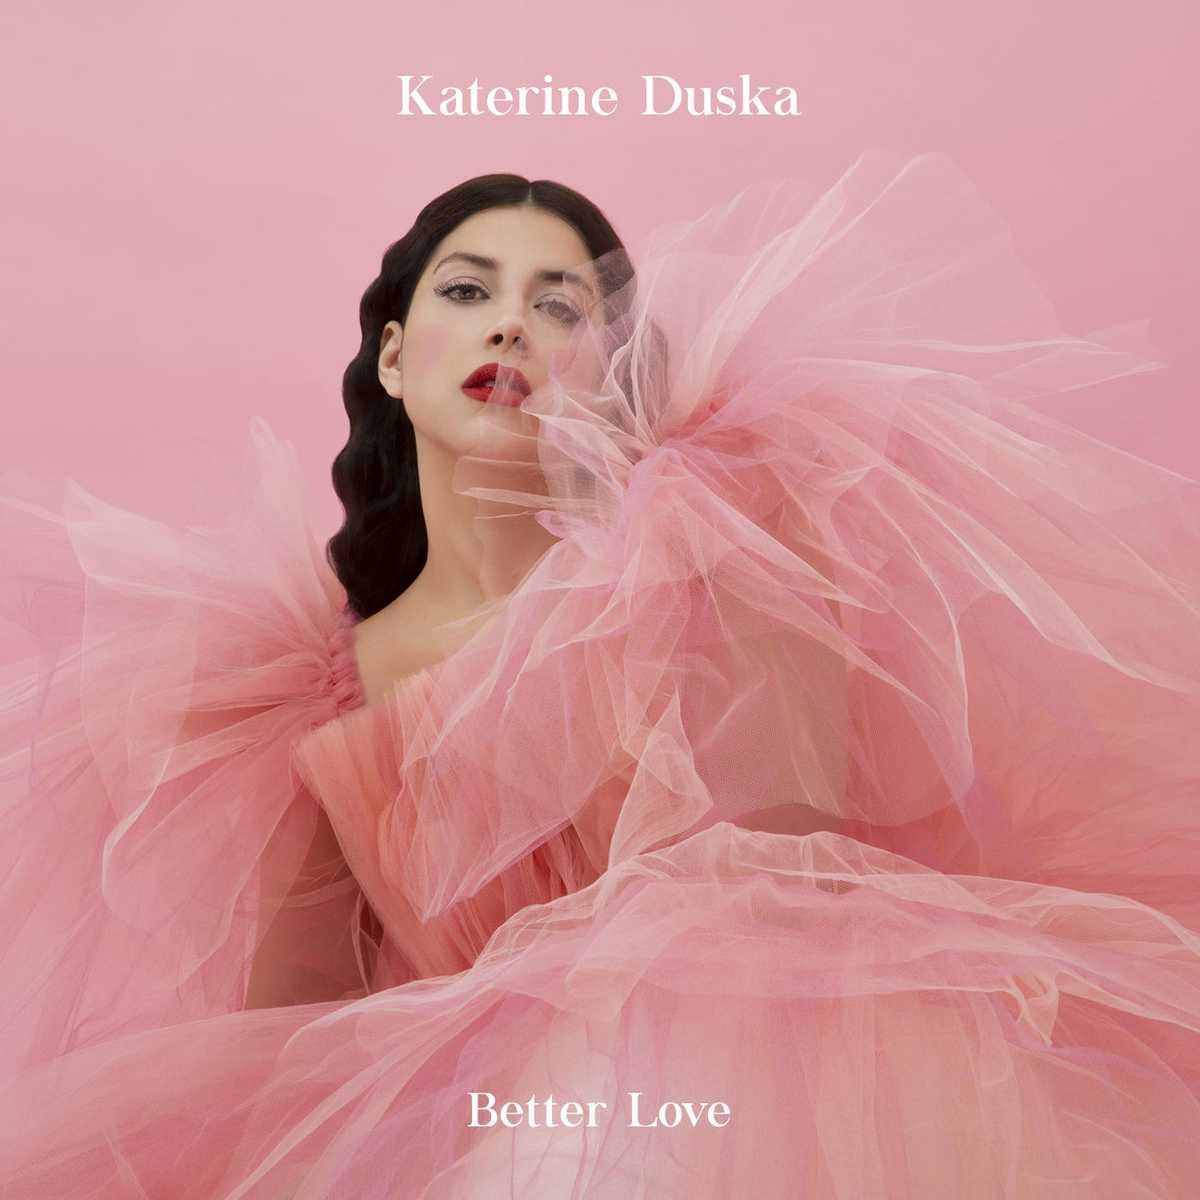 Σας αρέσει το Ελληνικό τραγούδι για την Eurovision 2019 από την Κατερίνα Ντούσκα; Better Love